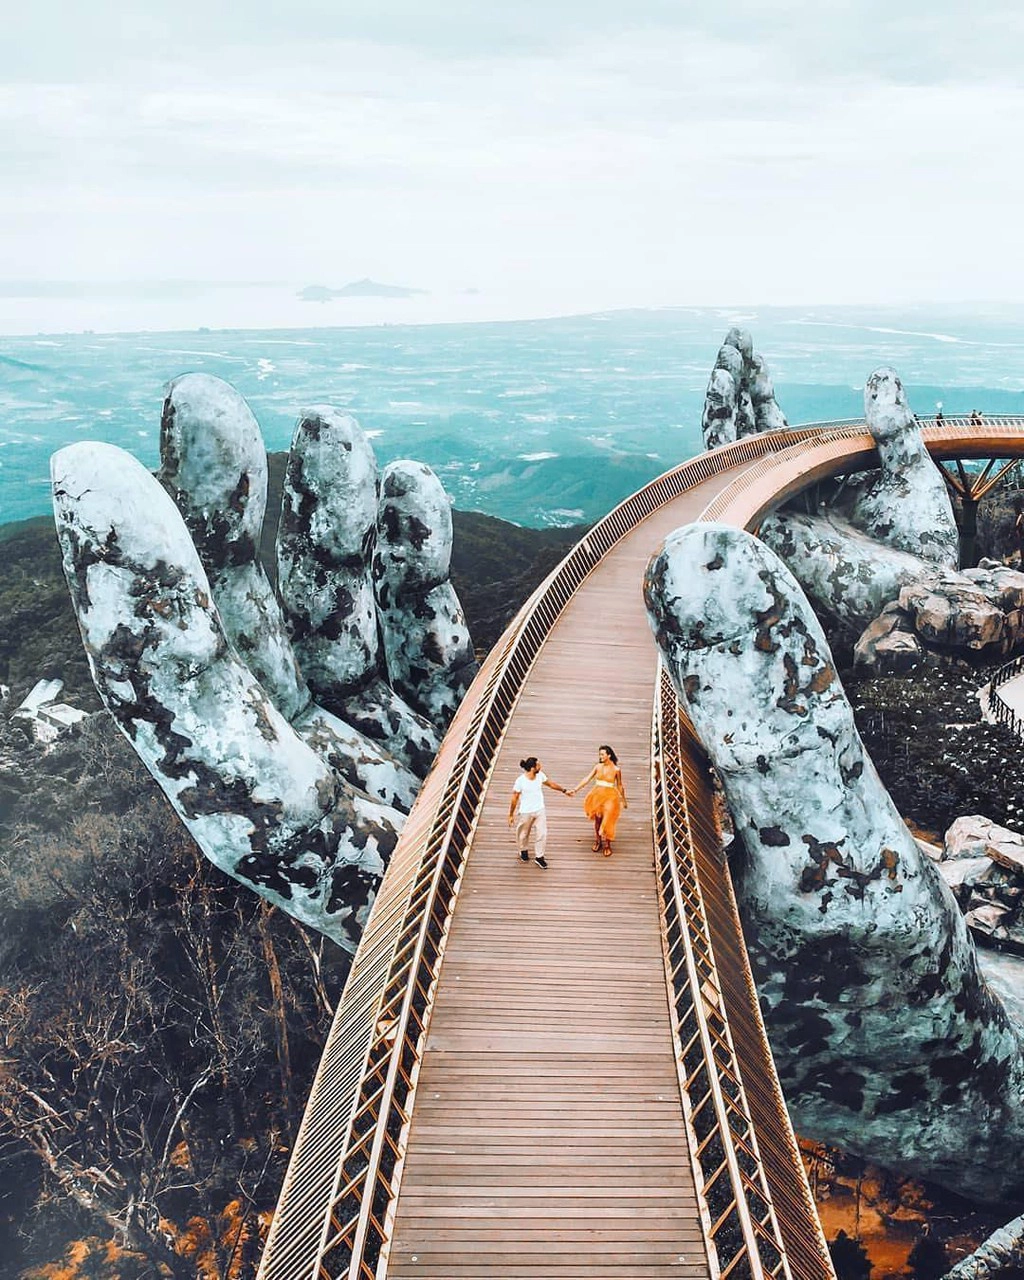 Cầu phun lửa và những cây cầu ấn tượng du khách ở Việt Nam